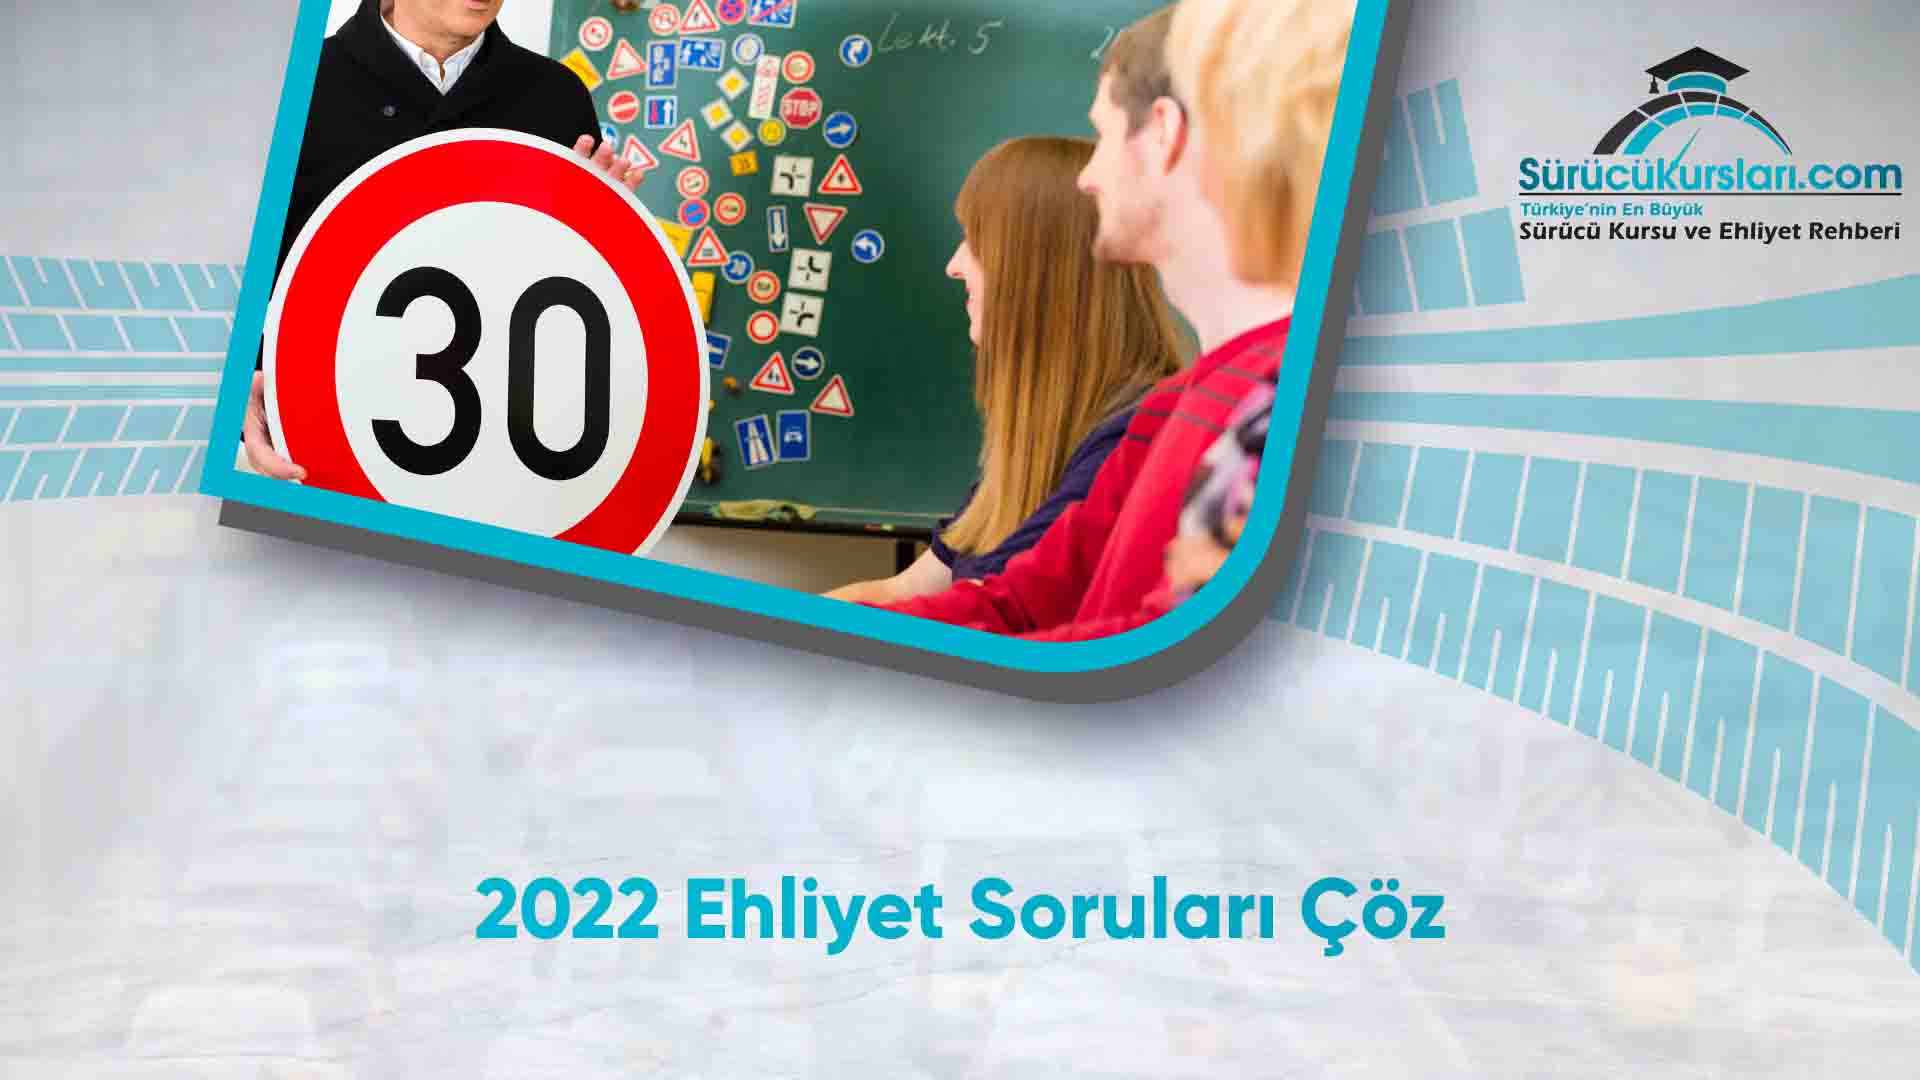 2022 Ehliyet Soruları Çöz